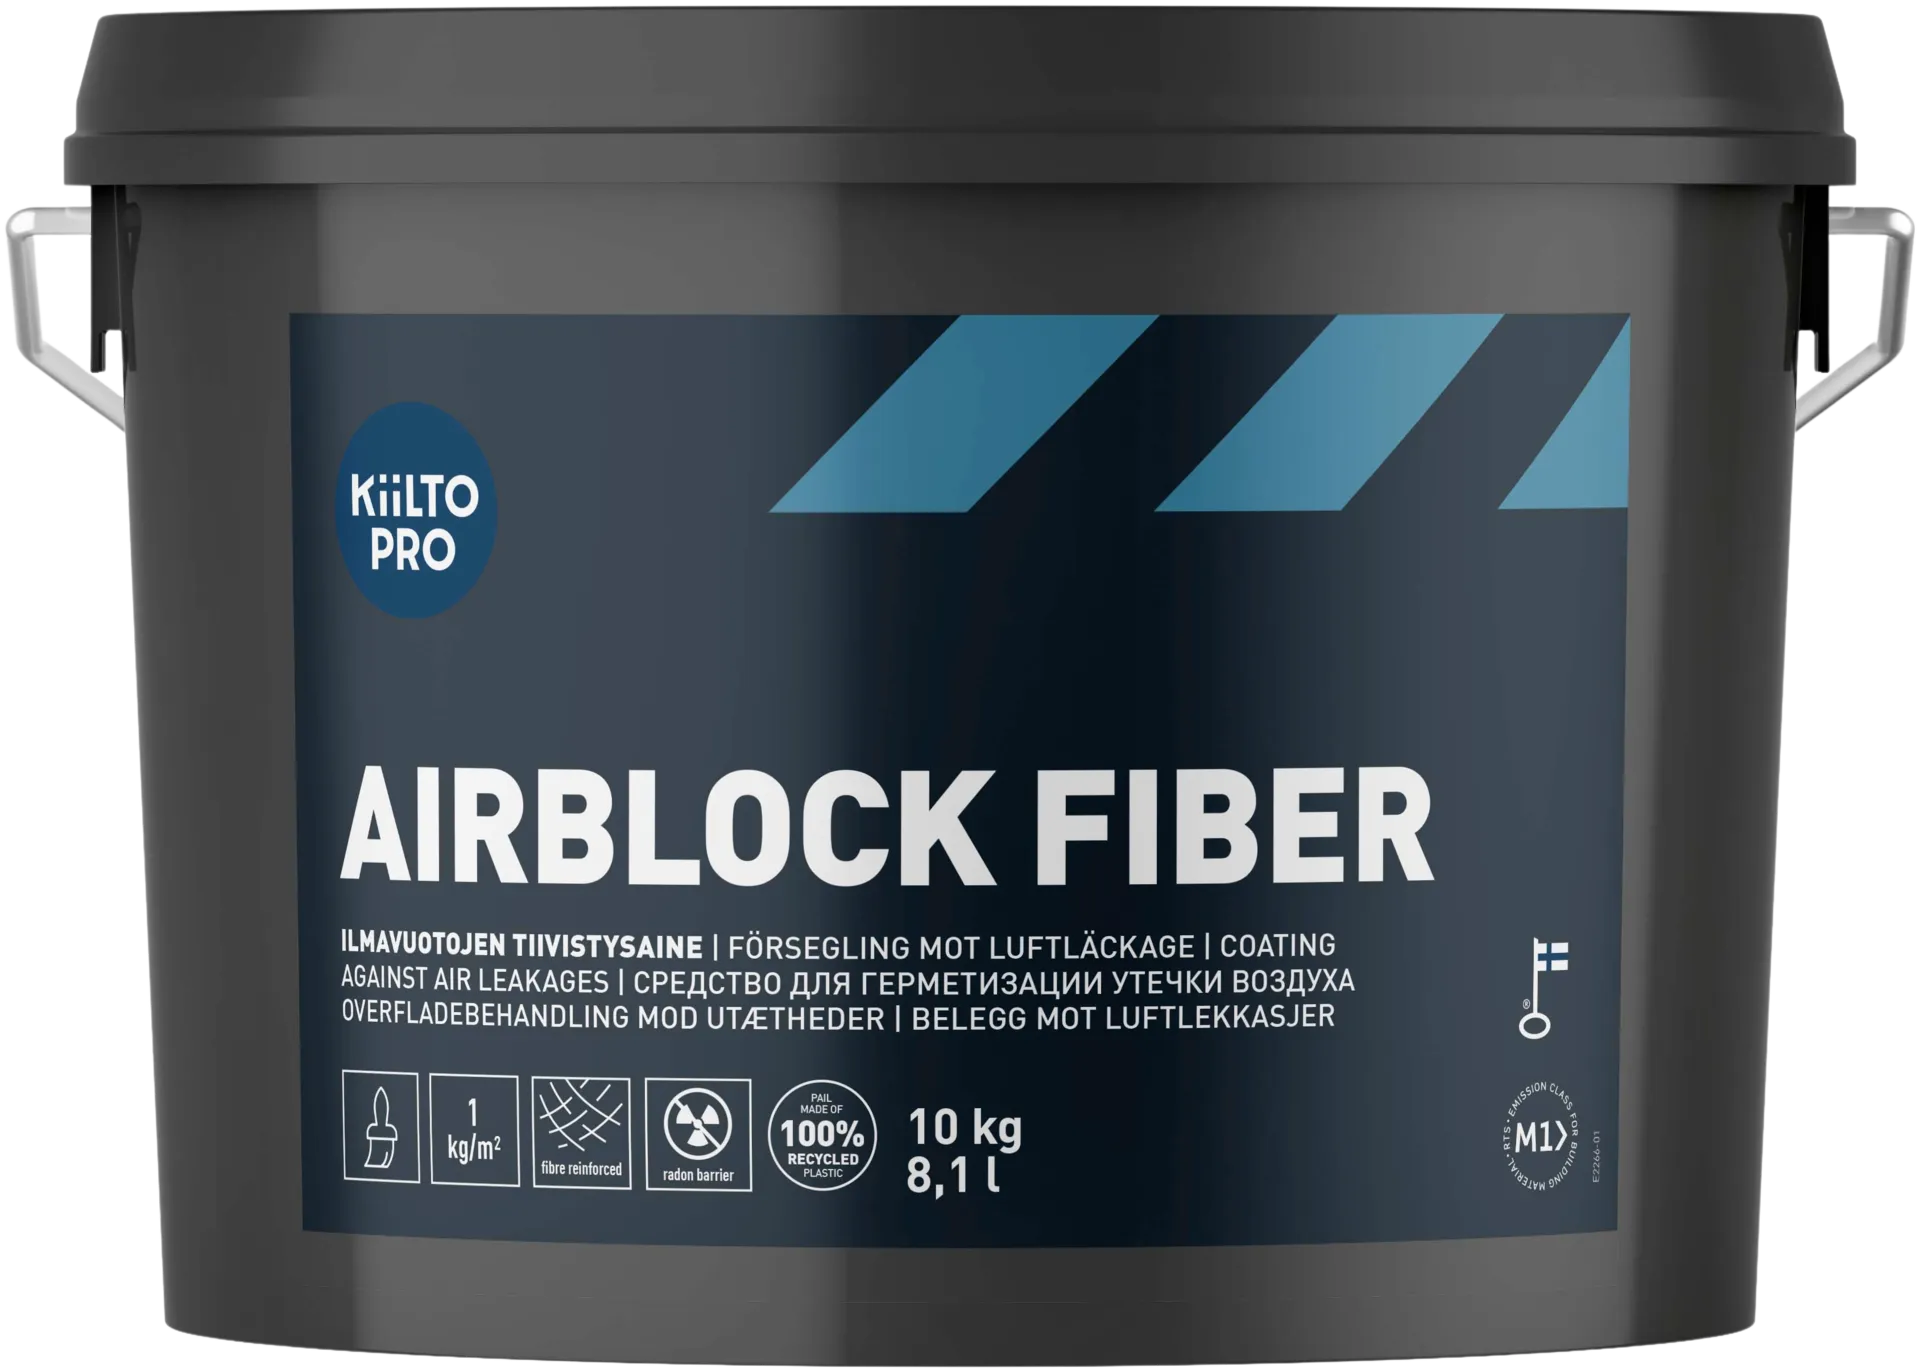 Kiilto Pro Airblock Fiber ilmavuotojen tiivistysaine 10 kg/8,1 l